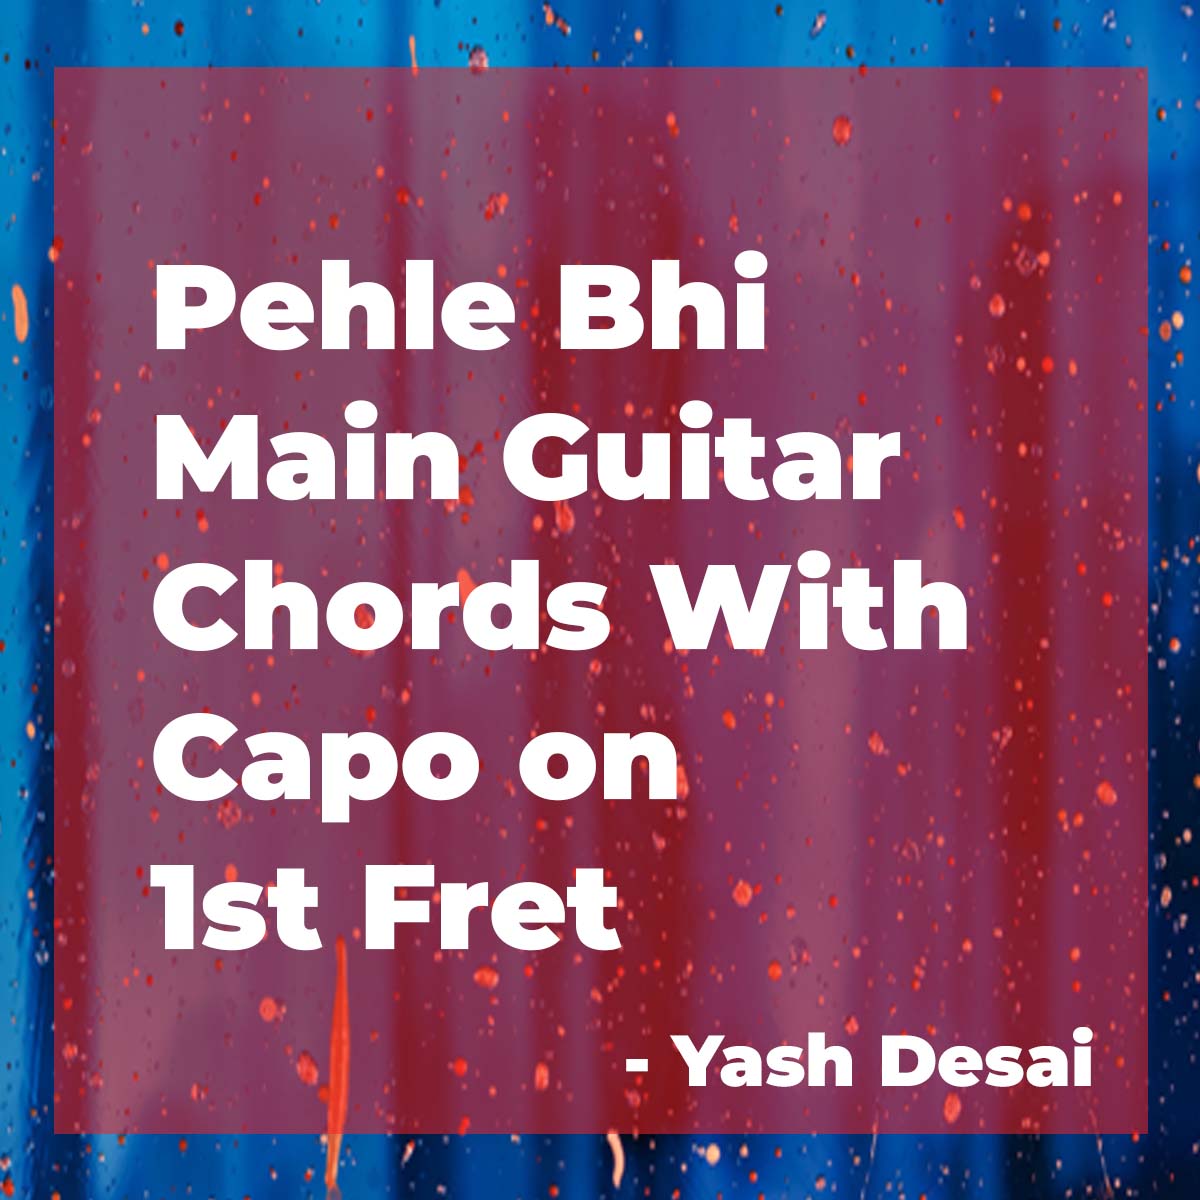 Vishal Mishra Pehle Bhi main guitar chords with capo on 1st Fret